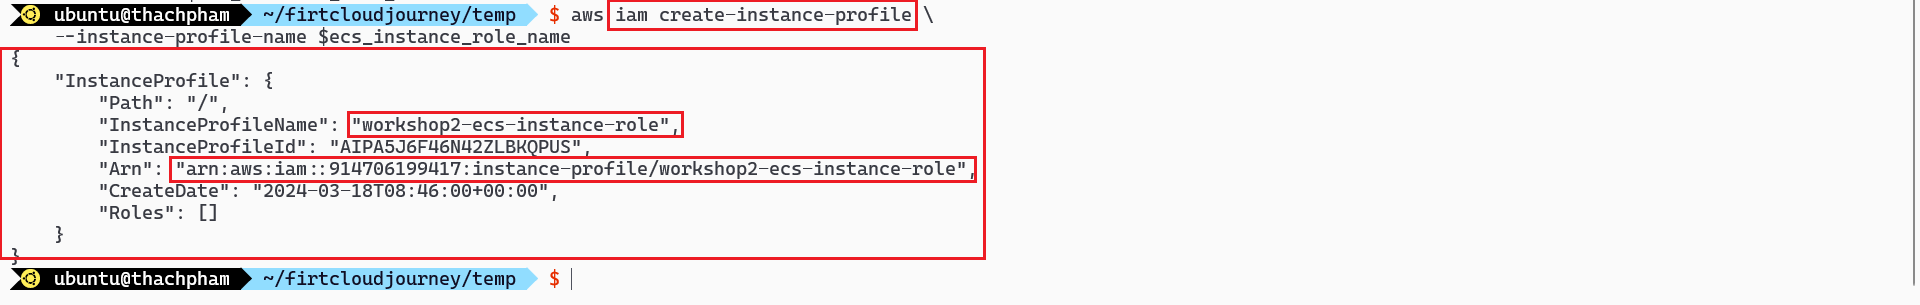 Create Instance Profile via CLI